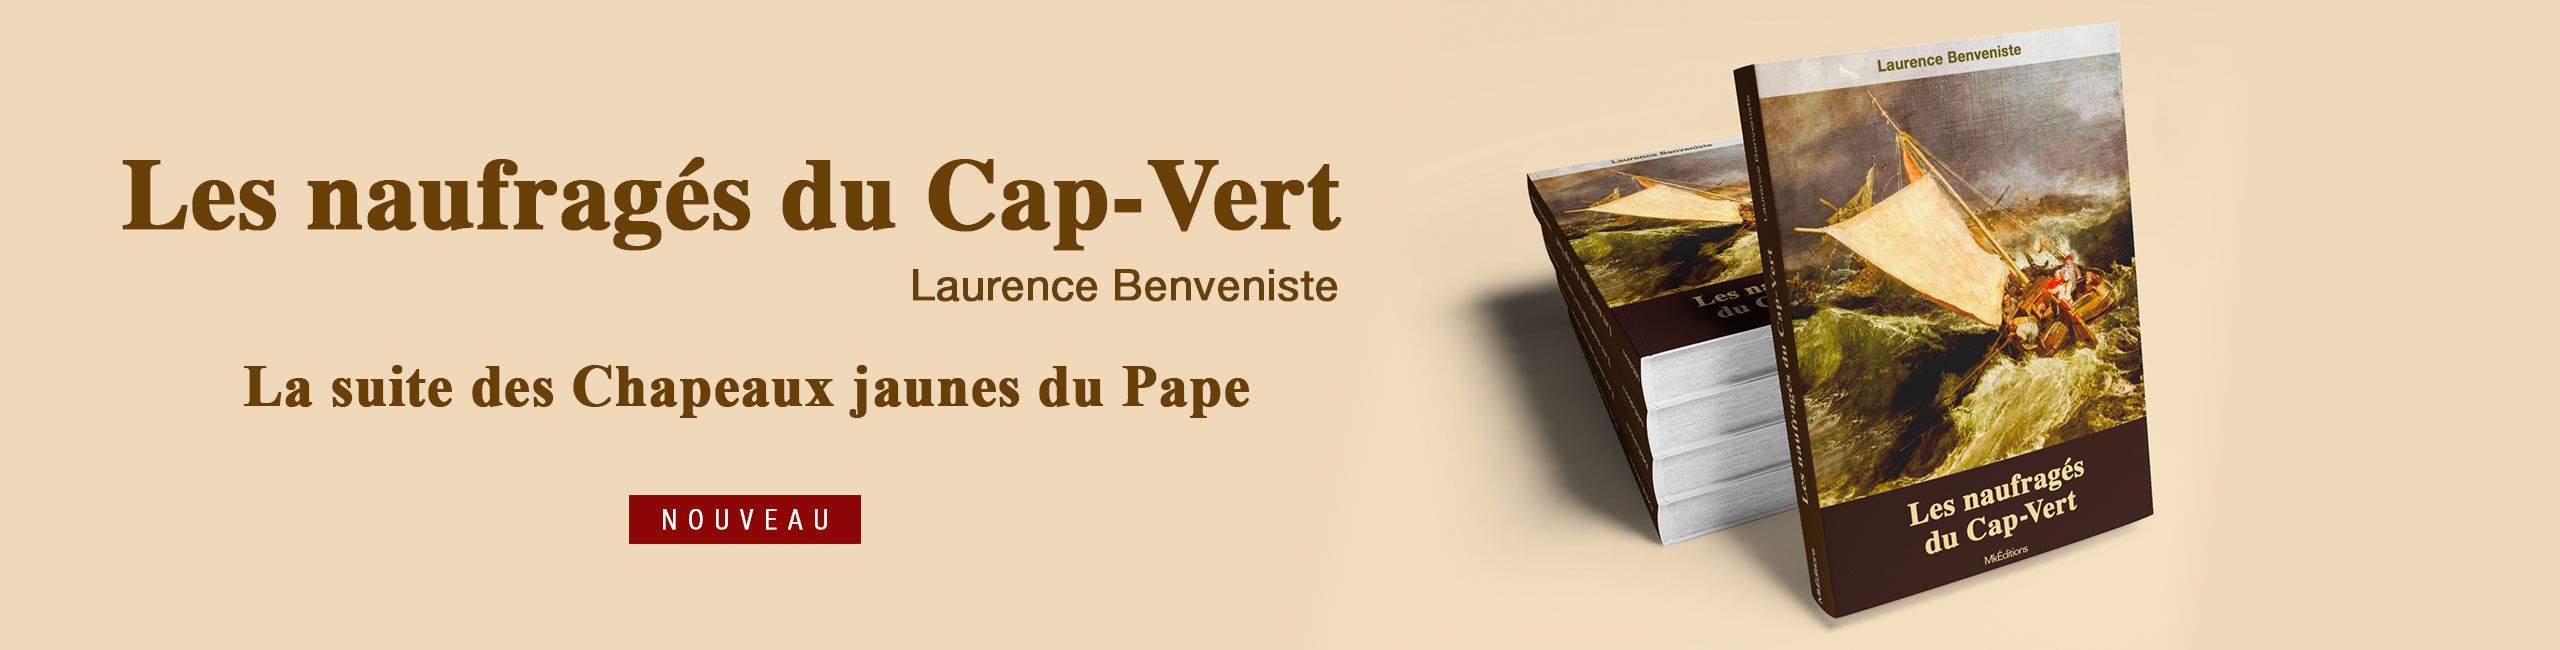 Les naufragés du Cap-Vert - Laurence Benveniste